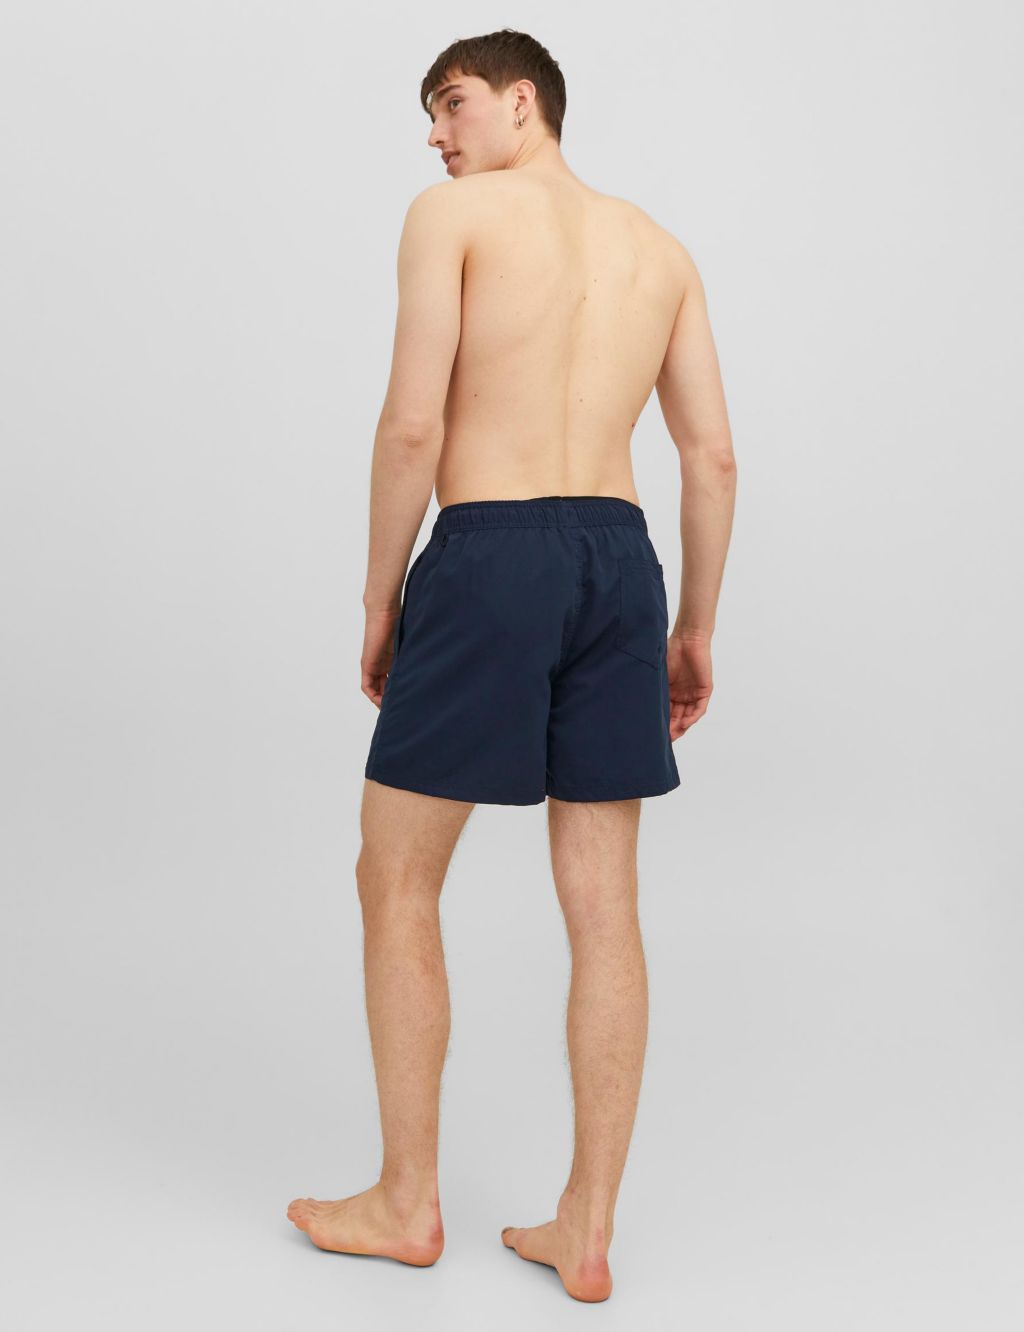 Pocketed Swim Shorts image 4